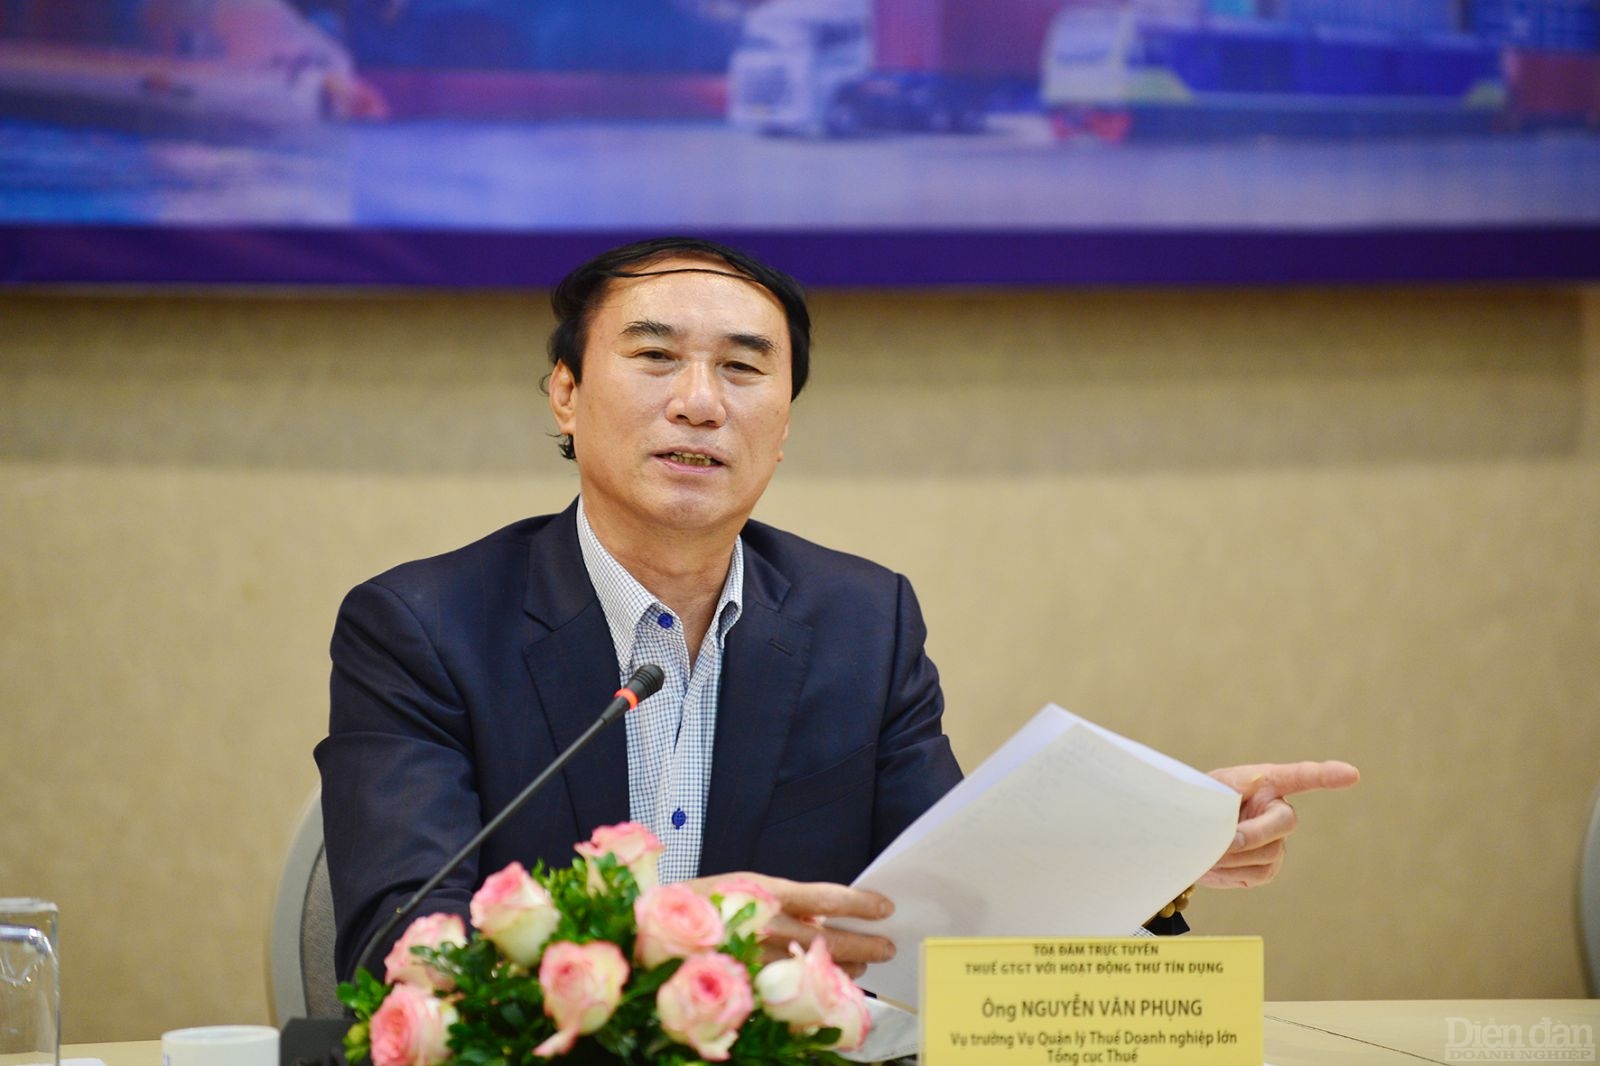 Ông Nguyễn Văn Phụng, nguyên Vụ trưởng Vụ Quản lý thuế doanh nghiệp lớn (Tổng Cục thuế, Bộ Tài chính)